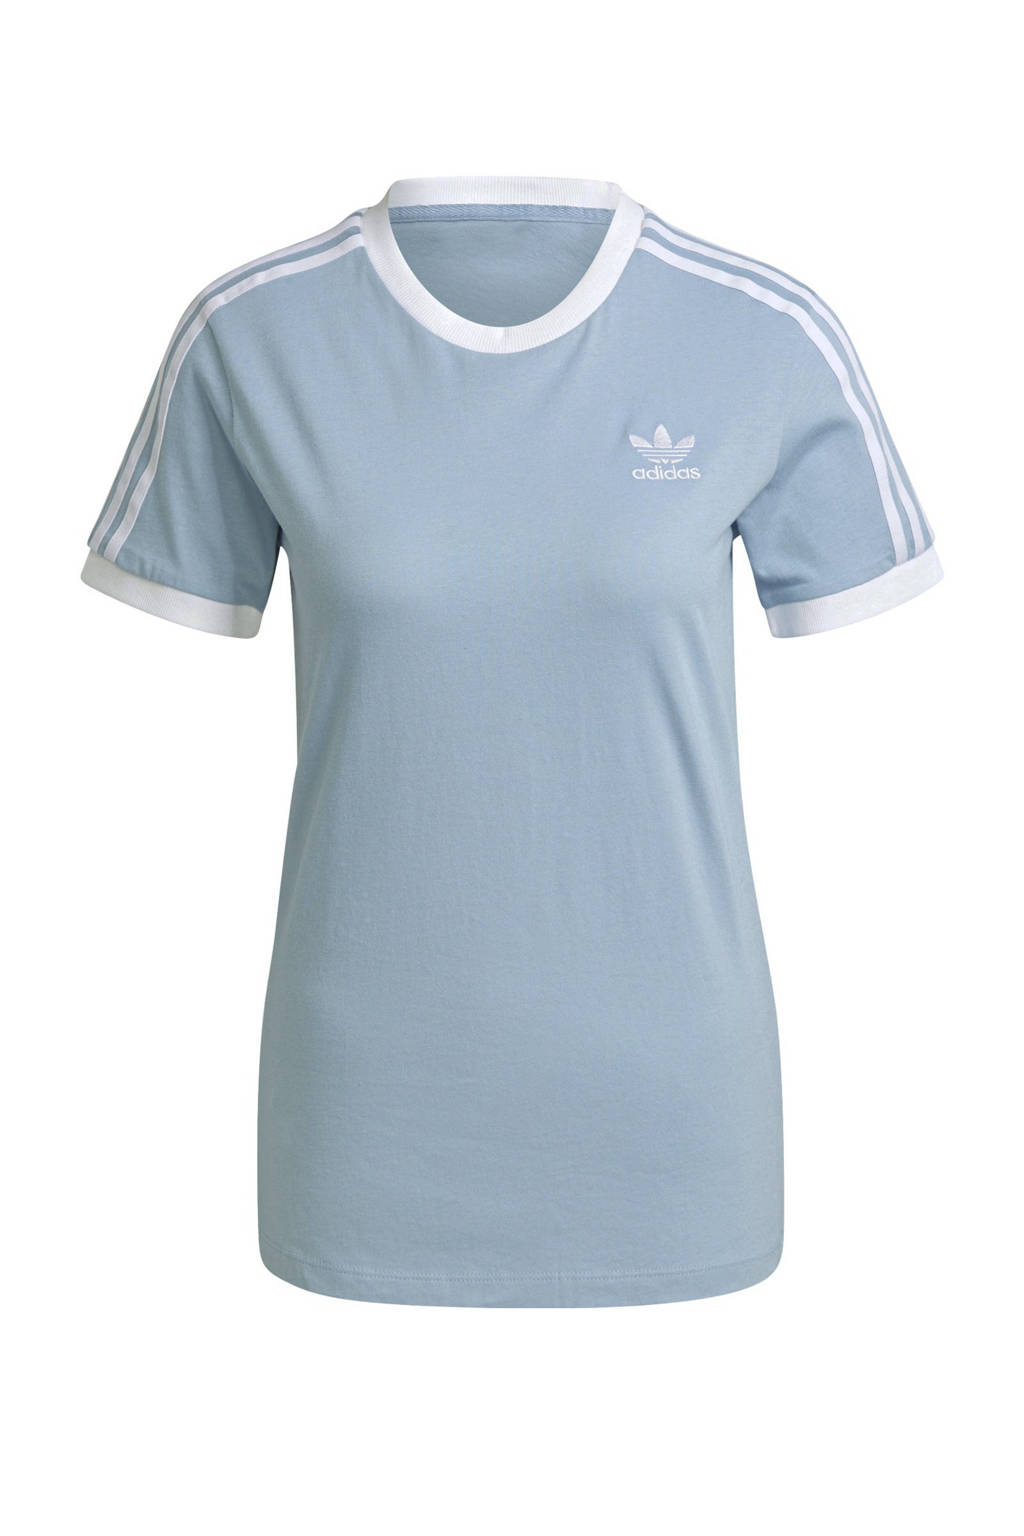 adidas Originals Adicolor T-shirt lichtblauw/wit, Lichtblauw/wit